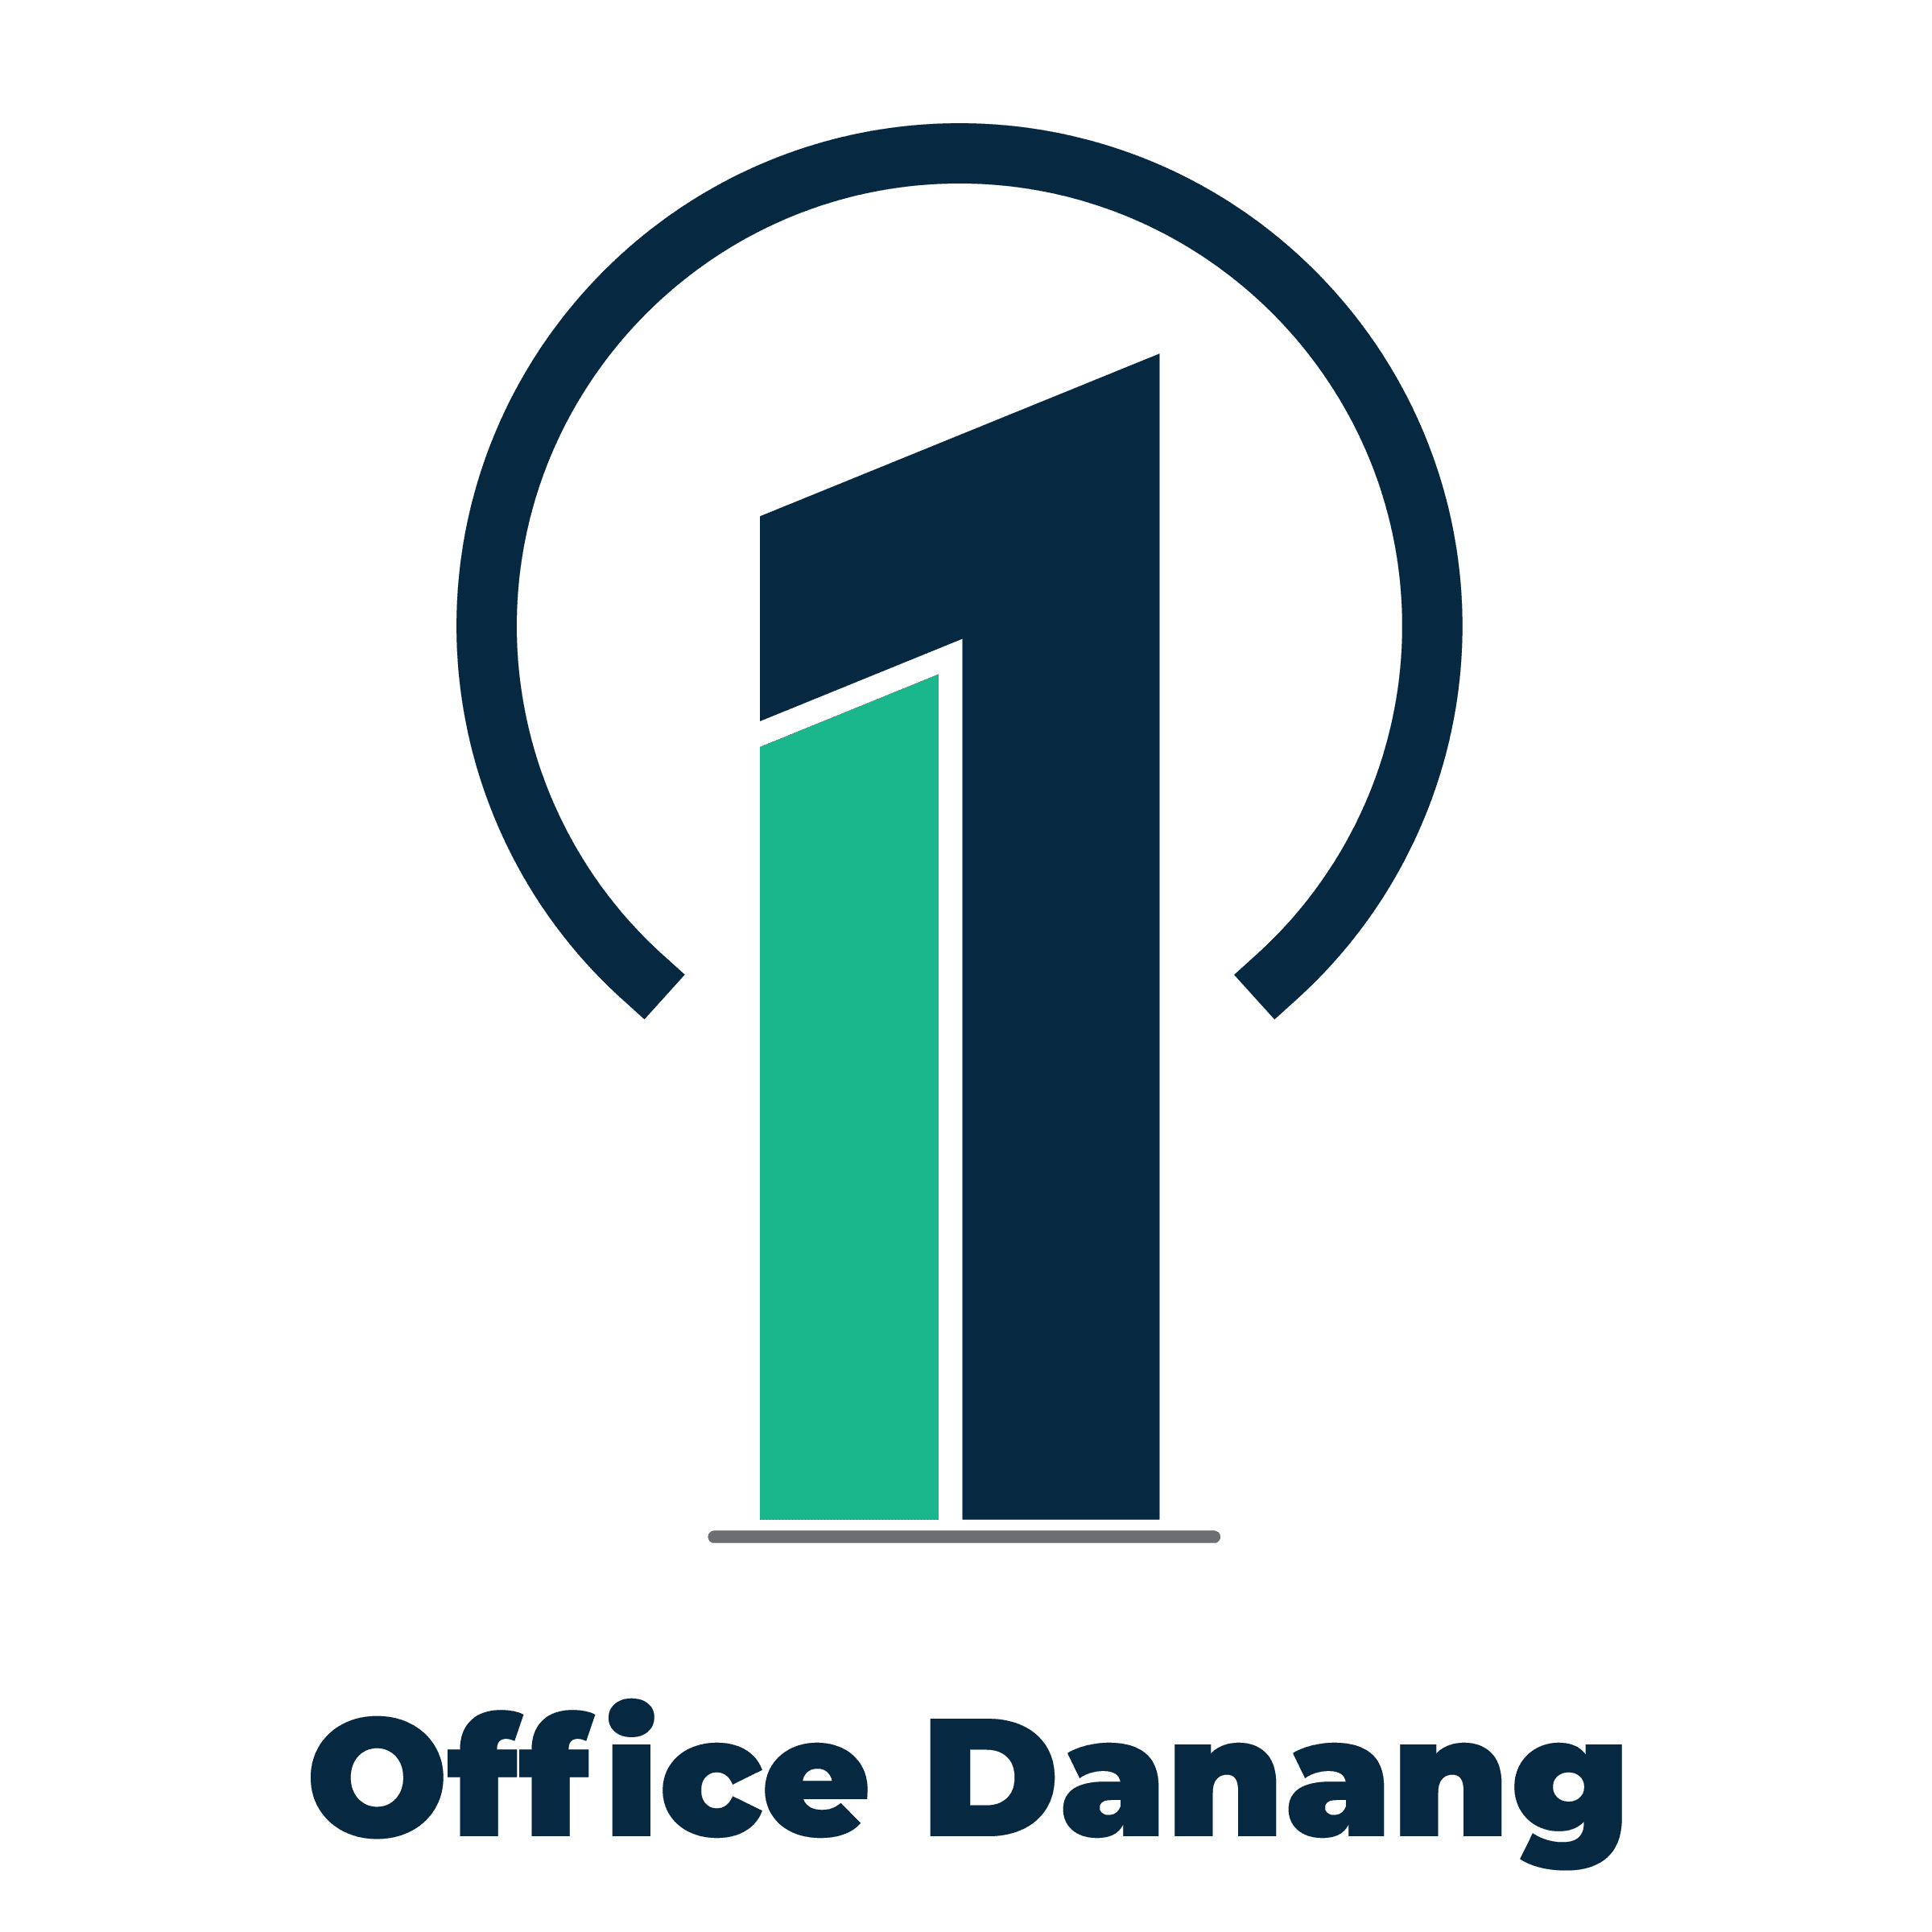 Office Danang – Dịch vụ tư vấn tìm kiếm văn phòng cho thuê tại Đà Nẵng-Tư vấn tìm kiếm văn phòng tại Đà Nẵng miễn phí